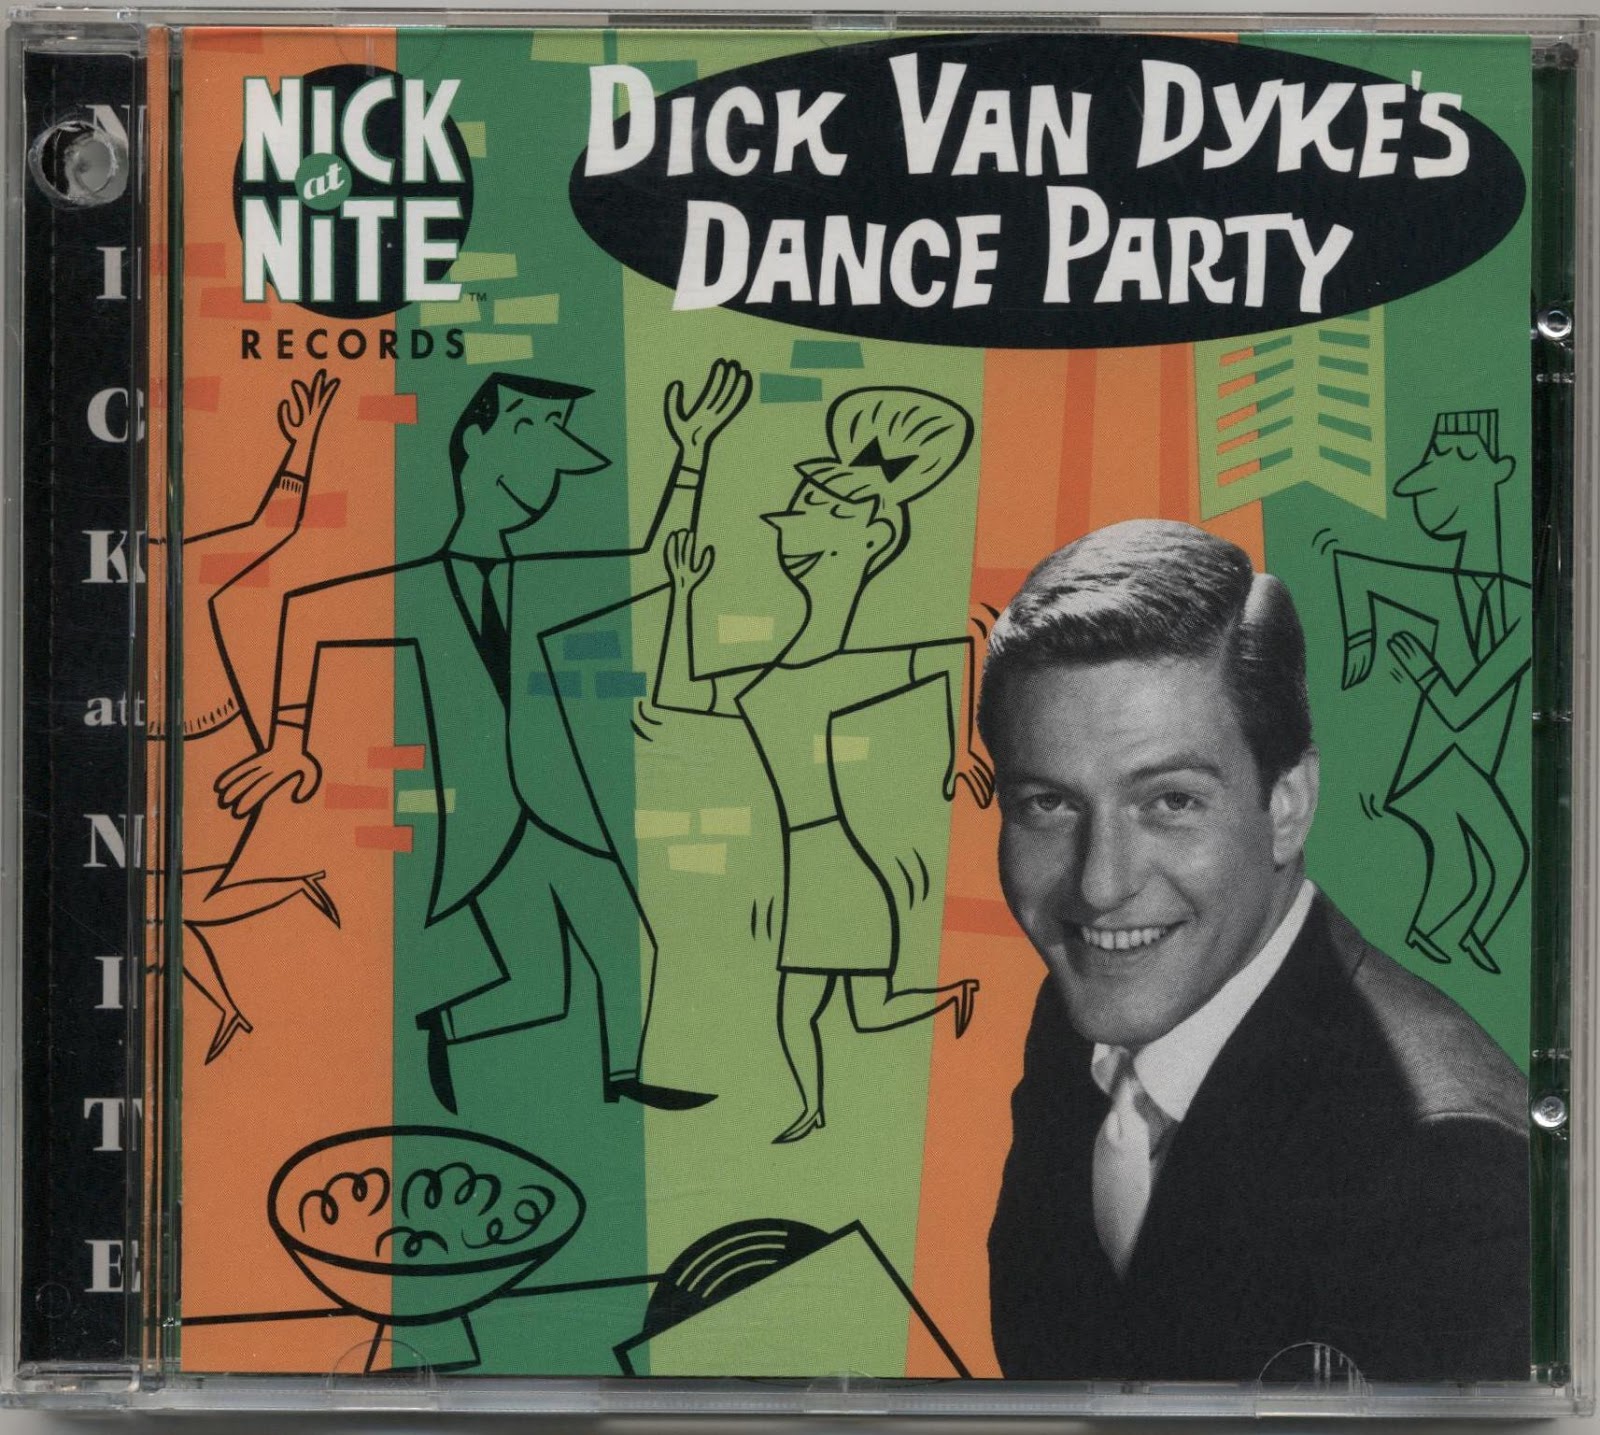 Dick van dyke dancing in the rain